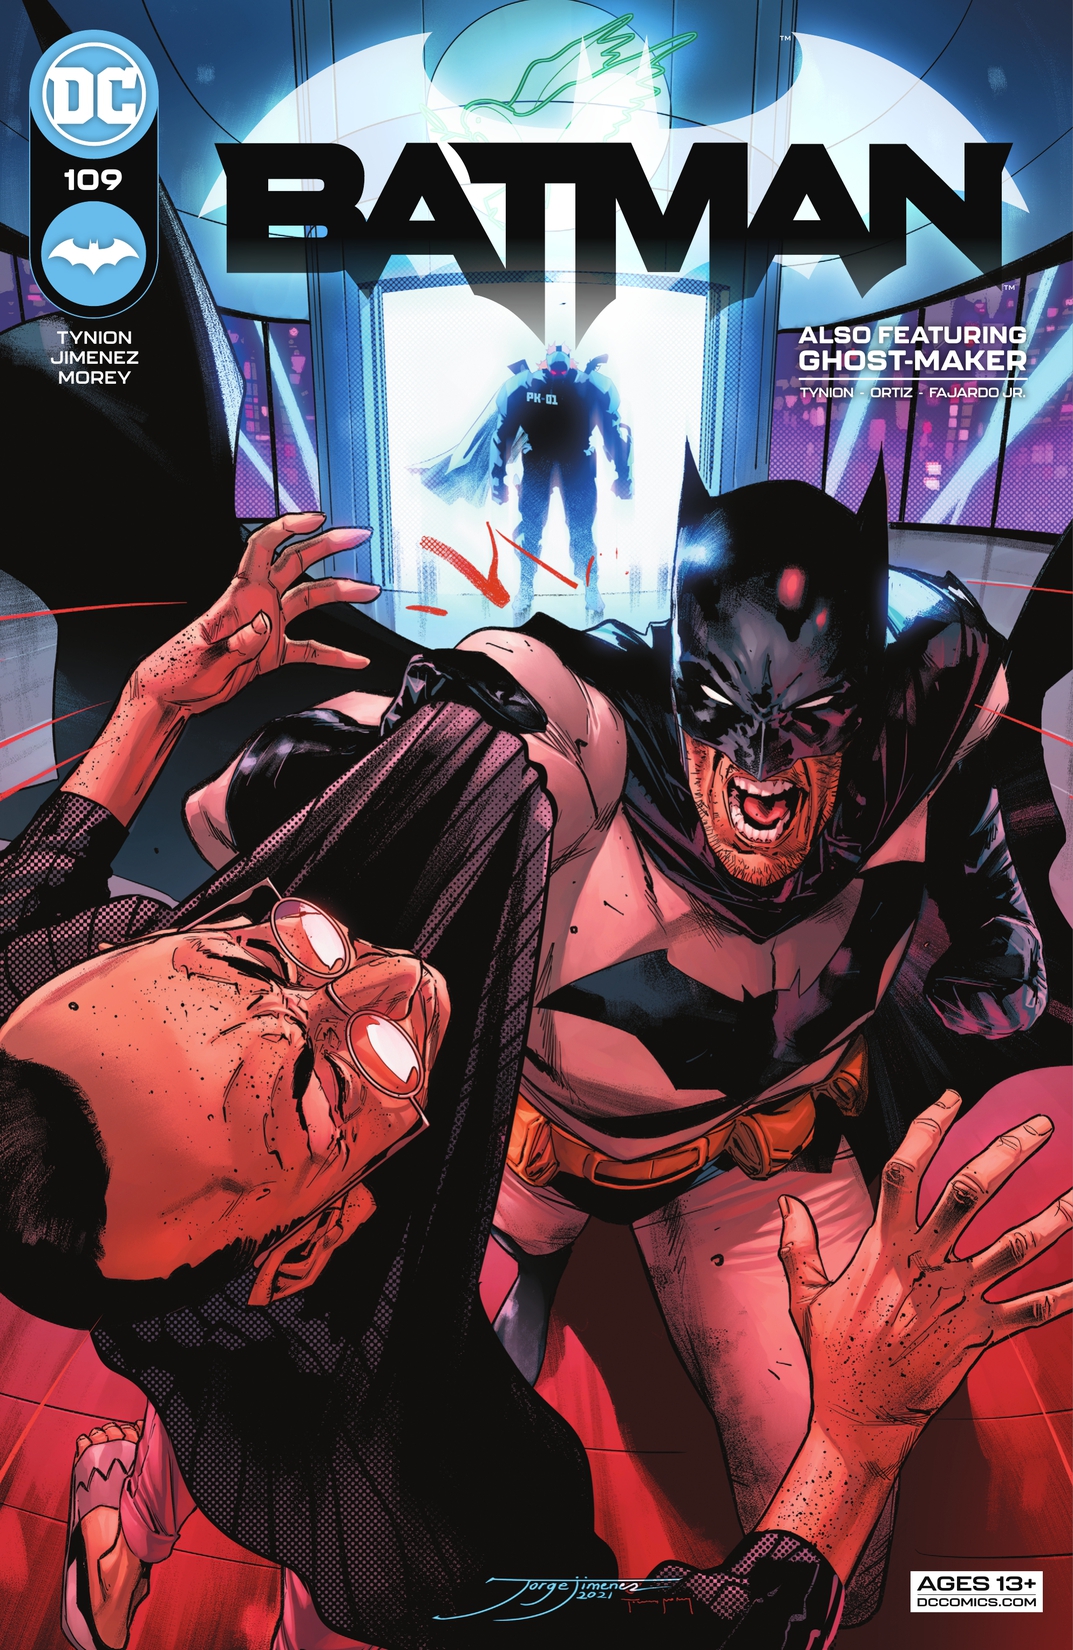 Batman (2016-) #109 preview images